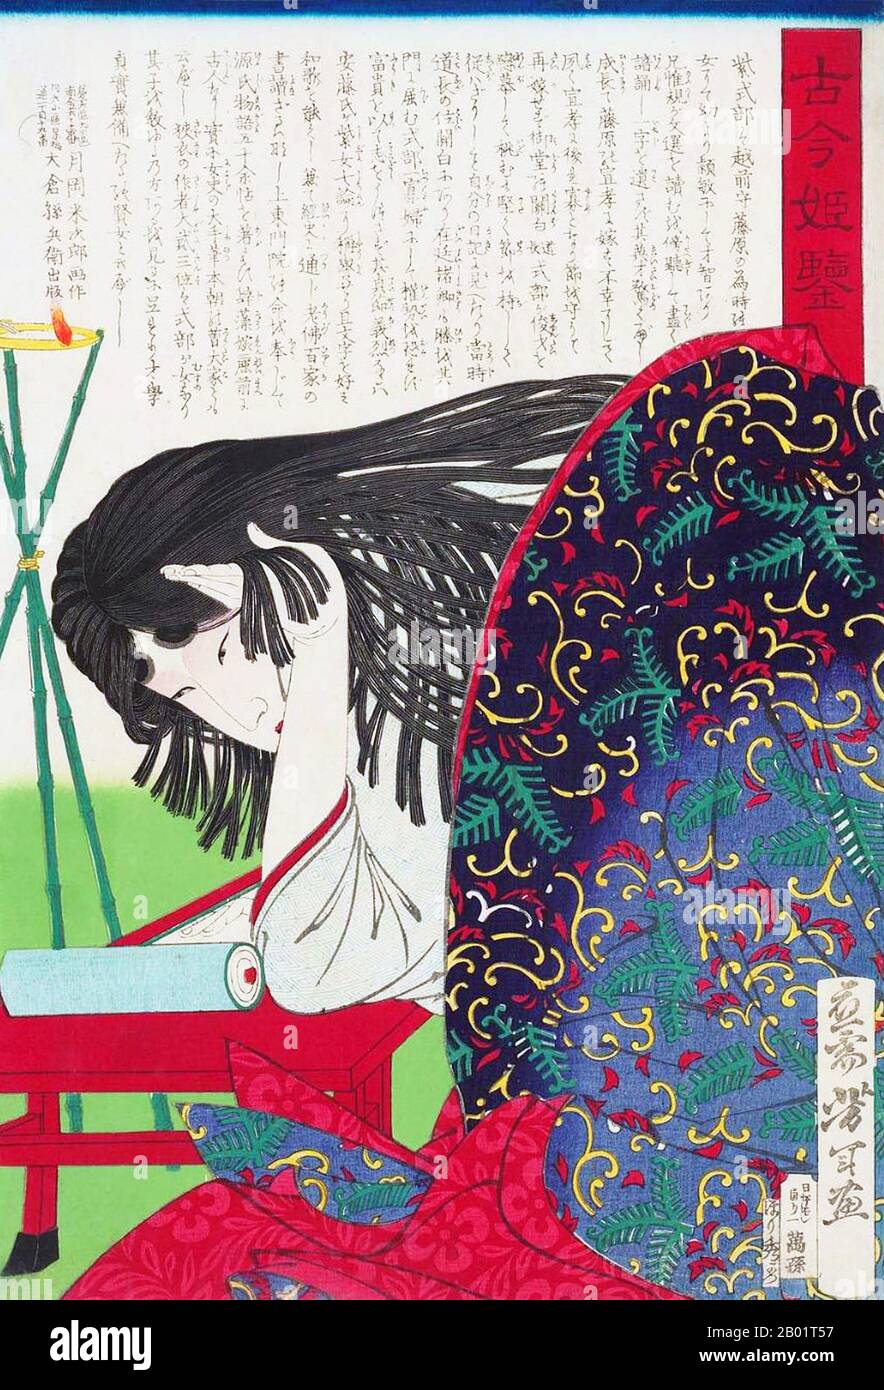 Murasaki Shikibu (紫 式部, Inglese: Lady Murasaki) (C. 973 – c. 1014 o 1025)  fu un romanziere, poeta e signora giapponese in attesa presso la corte  imperiale durante il periodo Heian. È